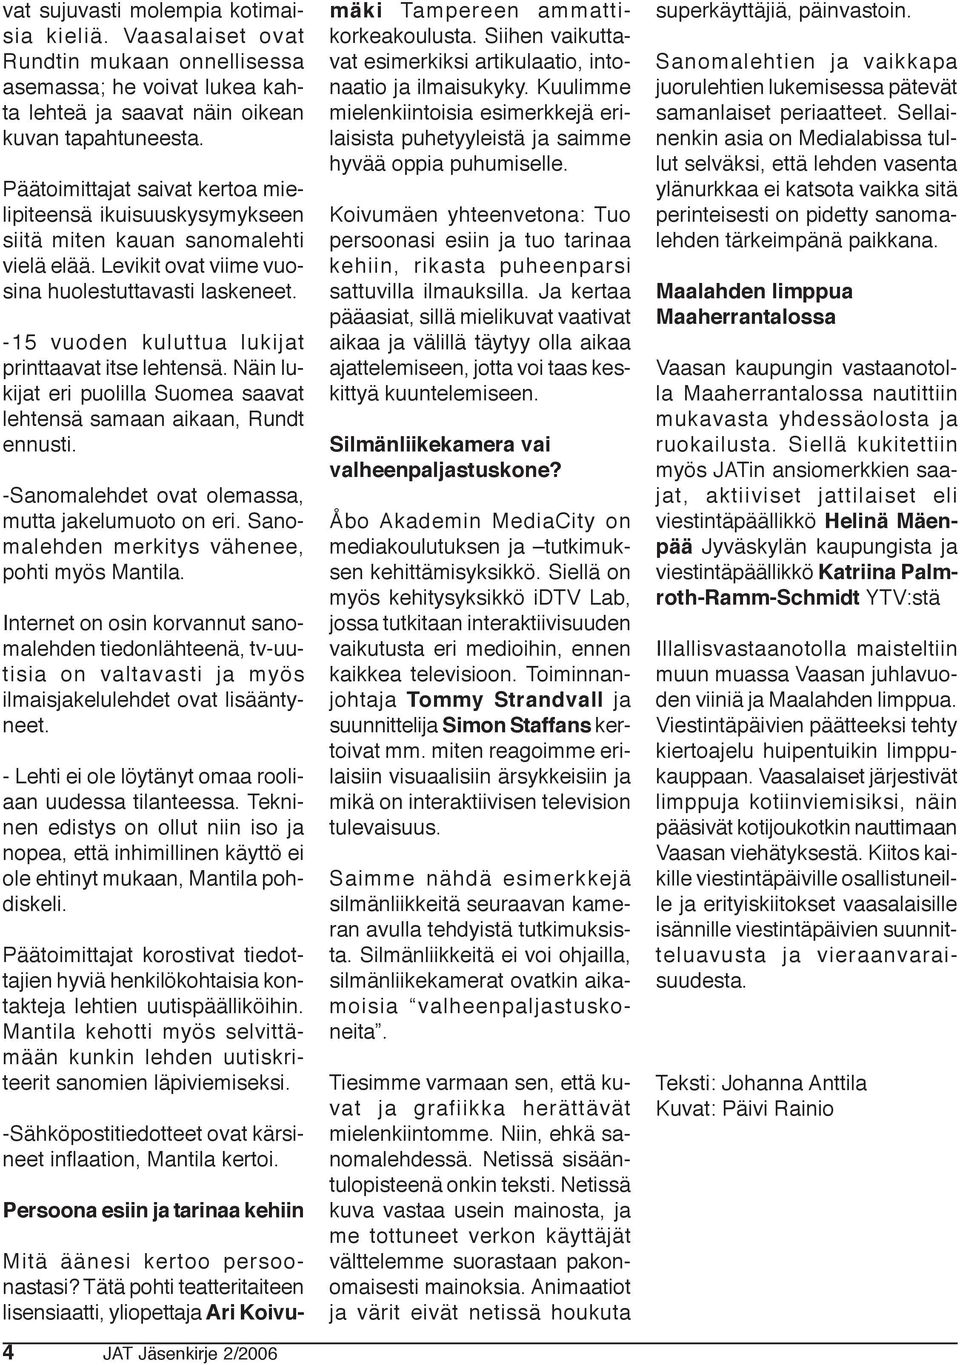 -15 vuoden kuluttua lukijat printtaavat itse lehtensä. Näin lukijat eri puolilla Suomea saavat lehtensä samaan aikaan, Rundt ennusti. -Sanomalehdet ovat olemassa, mutta jakelumuoto on eri.